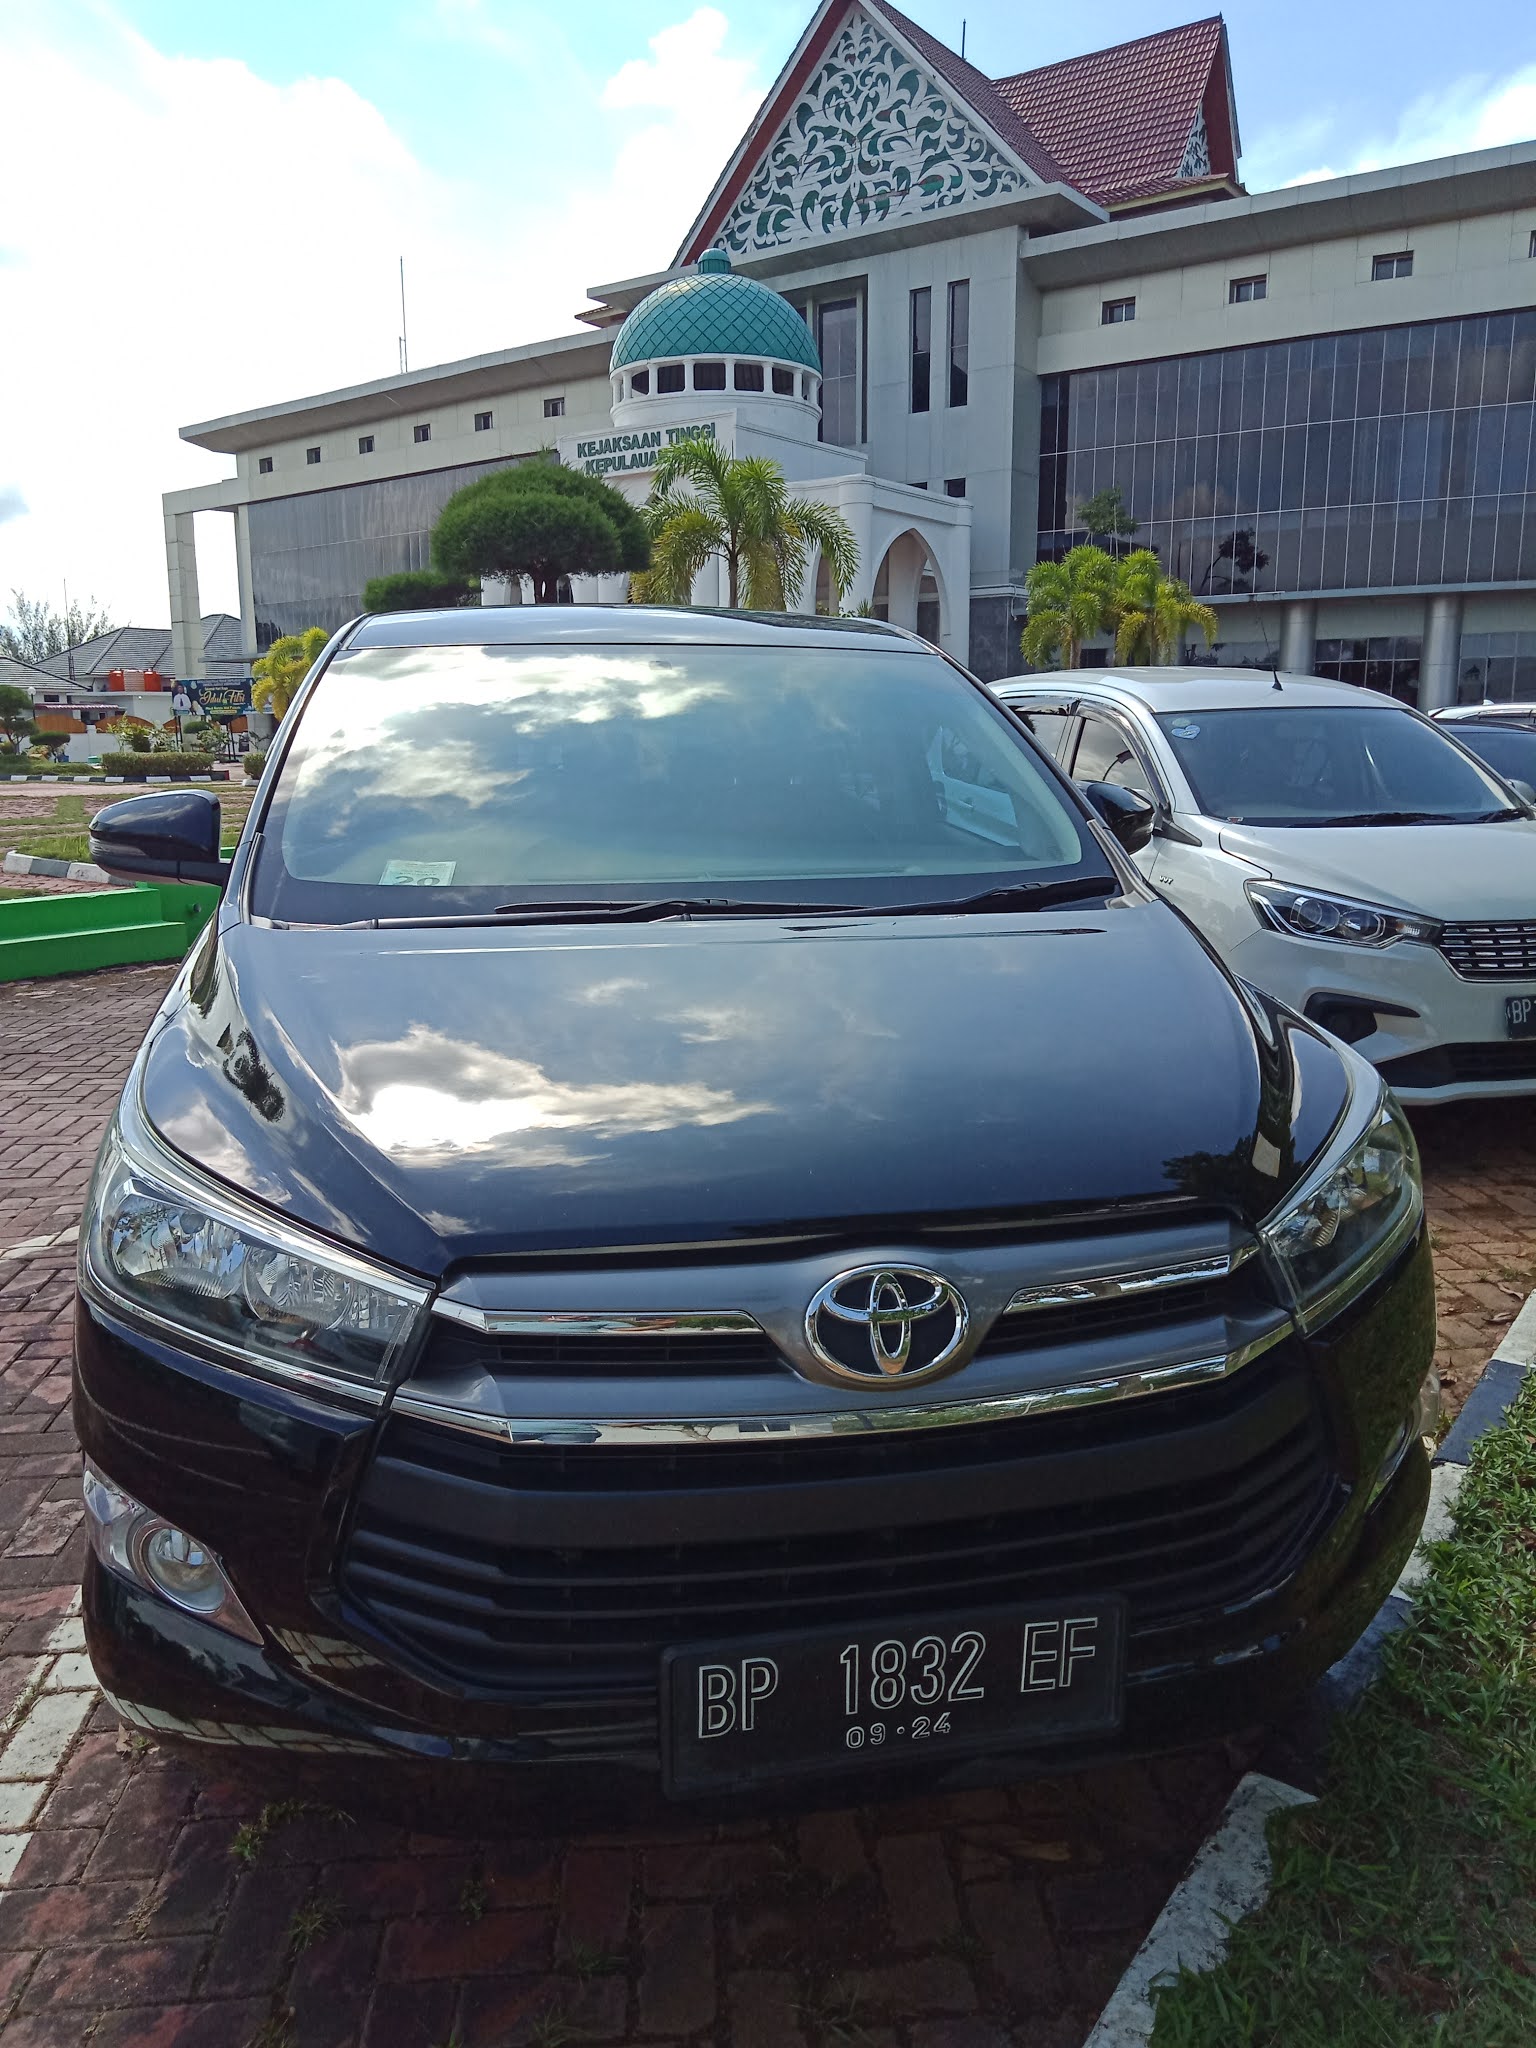 Rental Mobil Tanjung Pinang - Tanjung Pinang Rent Car ~ Sewa Mobil Di